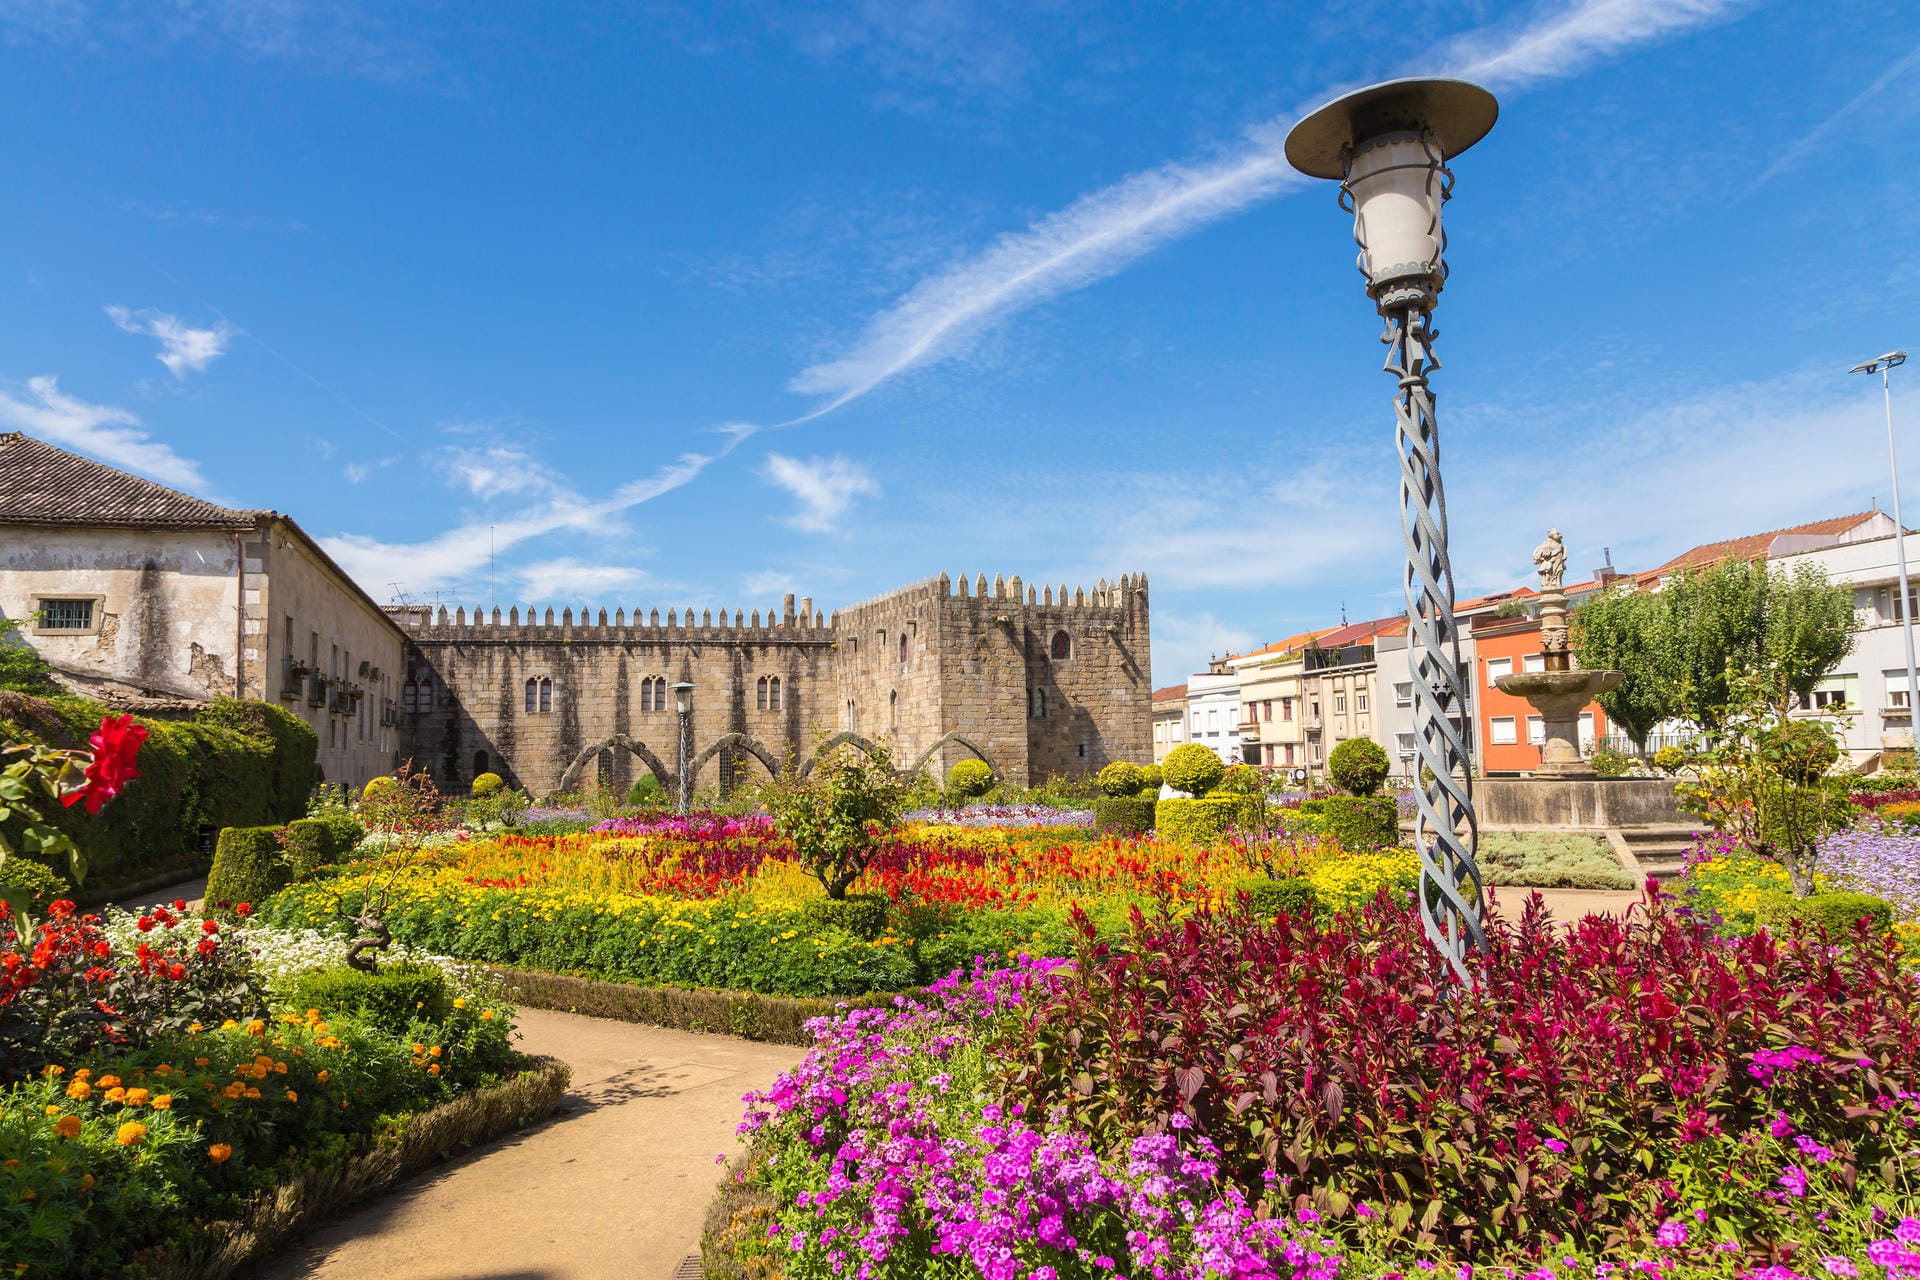 Der Jardim de Santa Bárbara ist eine der schönsten öffentlichen Gartenanlagen Portugals aus dem 17. Jahrhundert. Sie befindet sich ganz in der Nähe des Bischofpalastes.